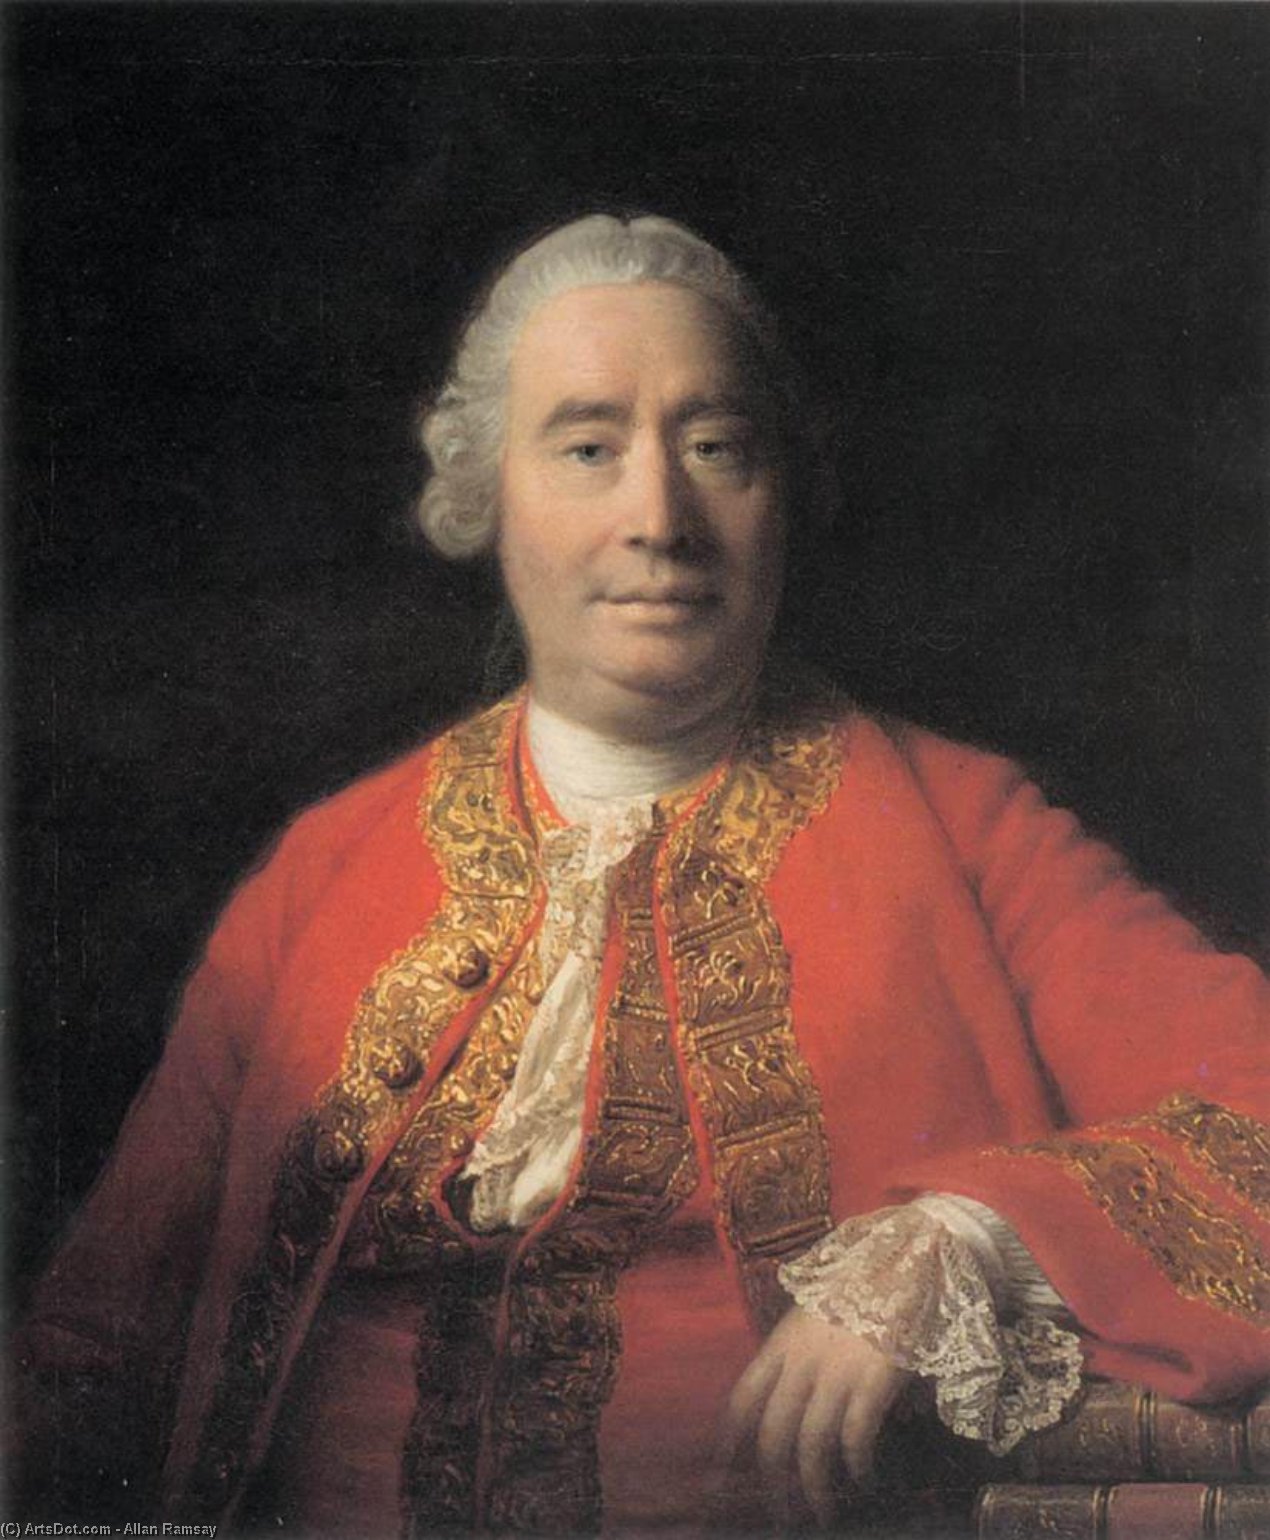 Comprar Reproducciones De Arte Del Museo Retrato de David Hume, 1766 de Allan Ramsay | ArtsDot.com